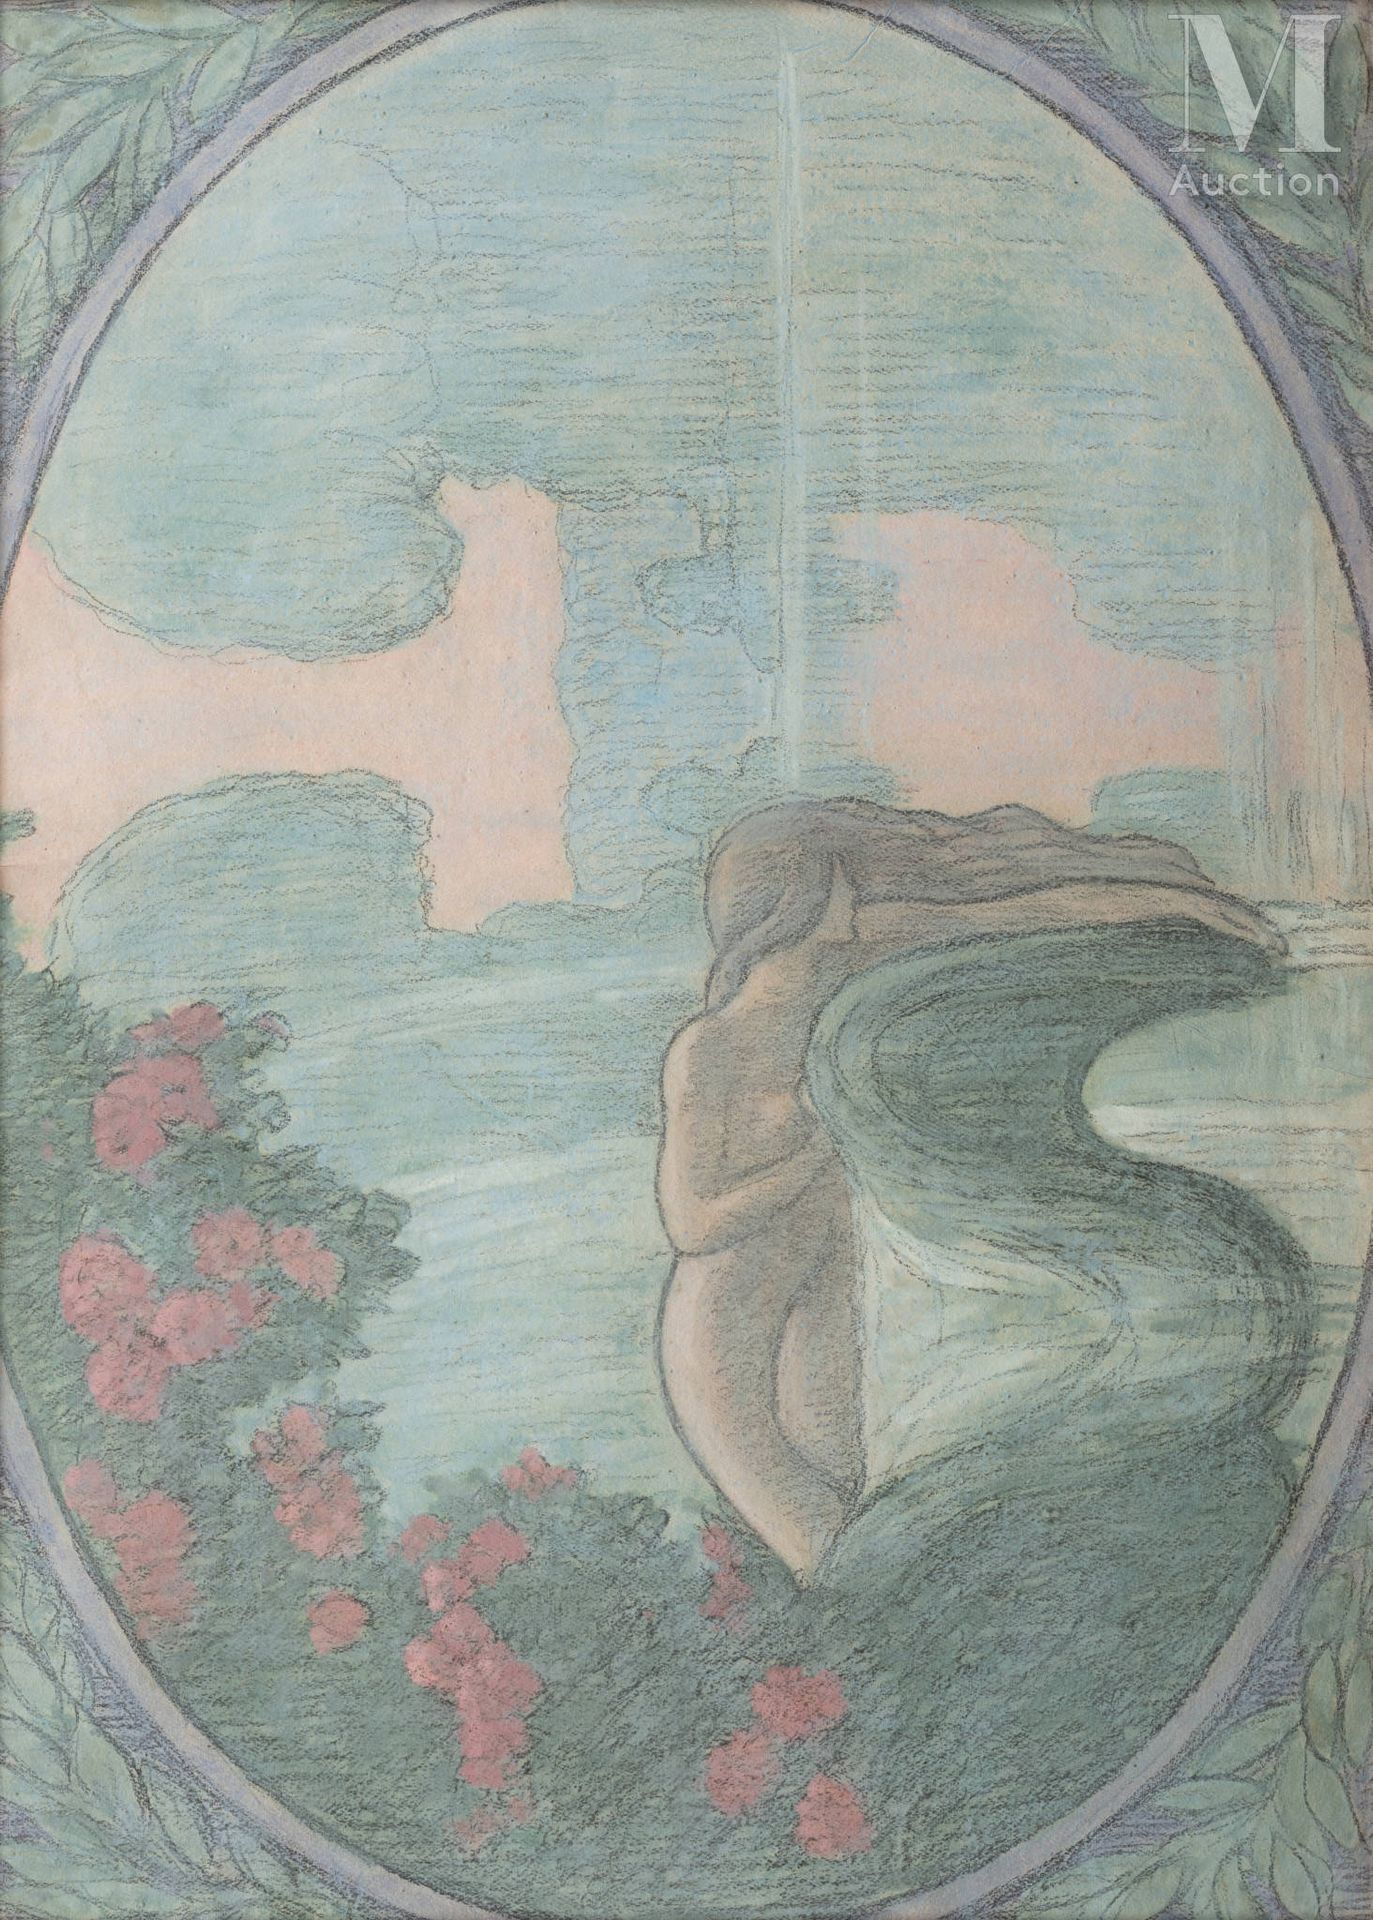 Jean Francis AUBURTIN (Paris 1866 - Dieppe 1930) Nymphe in einem Wasserbecken

G&hellip;